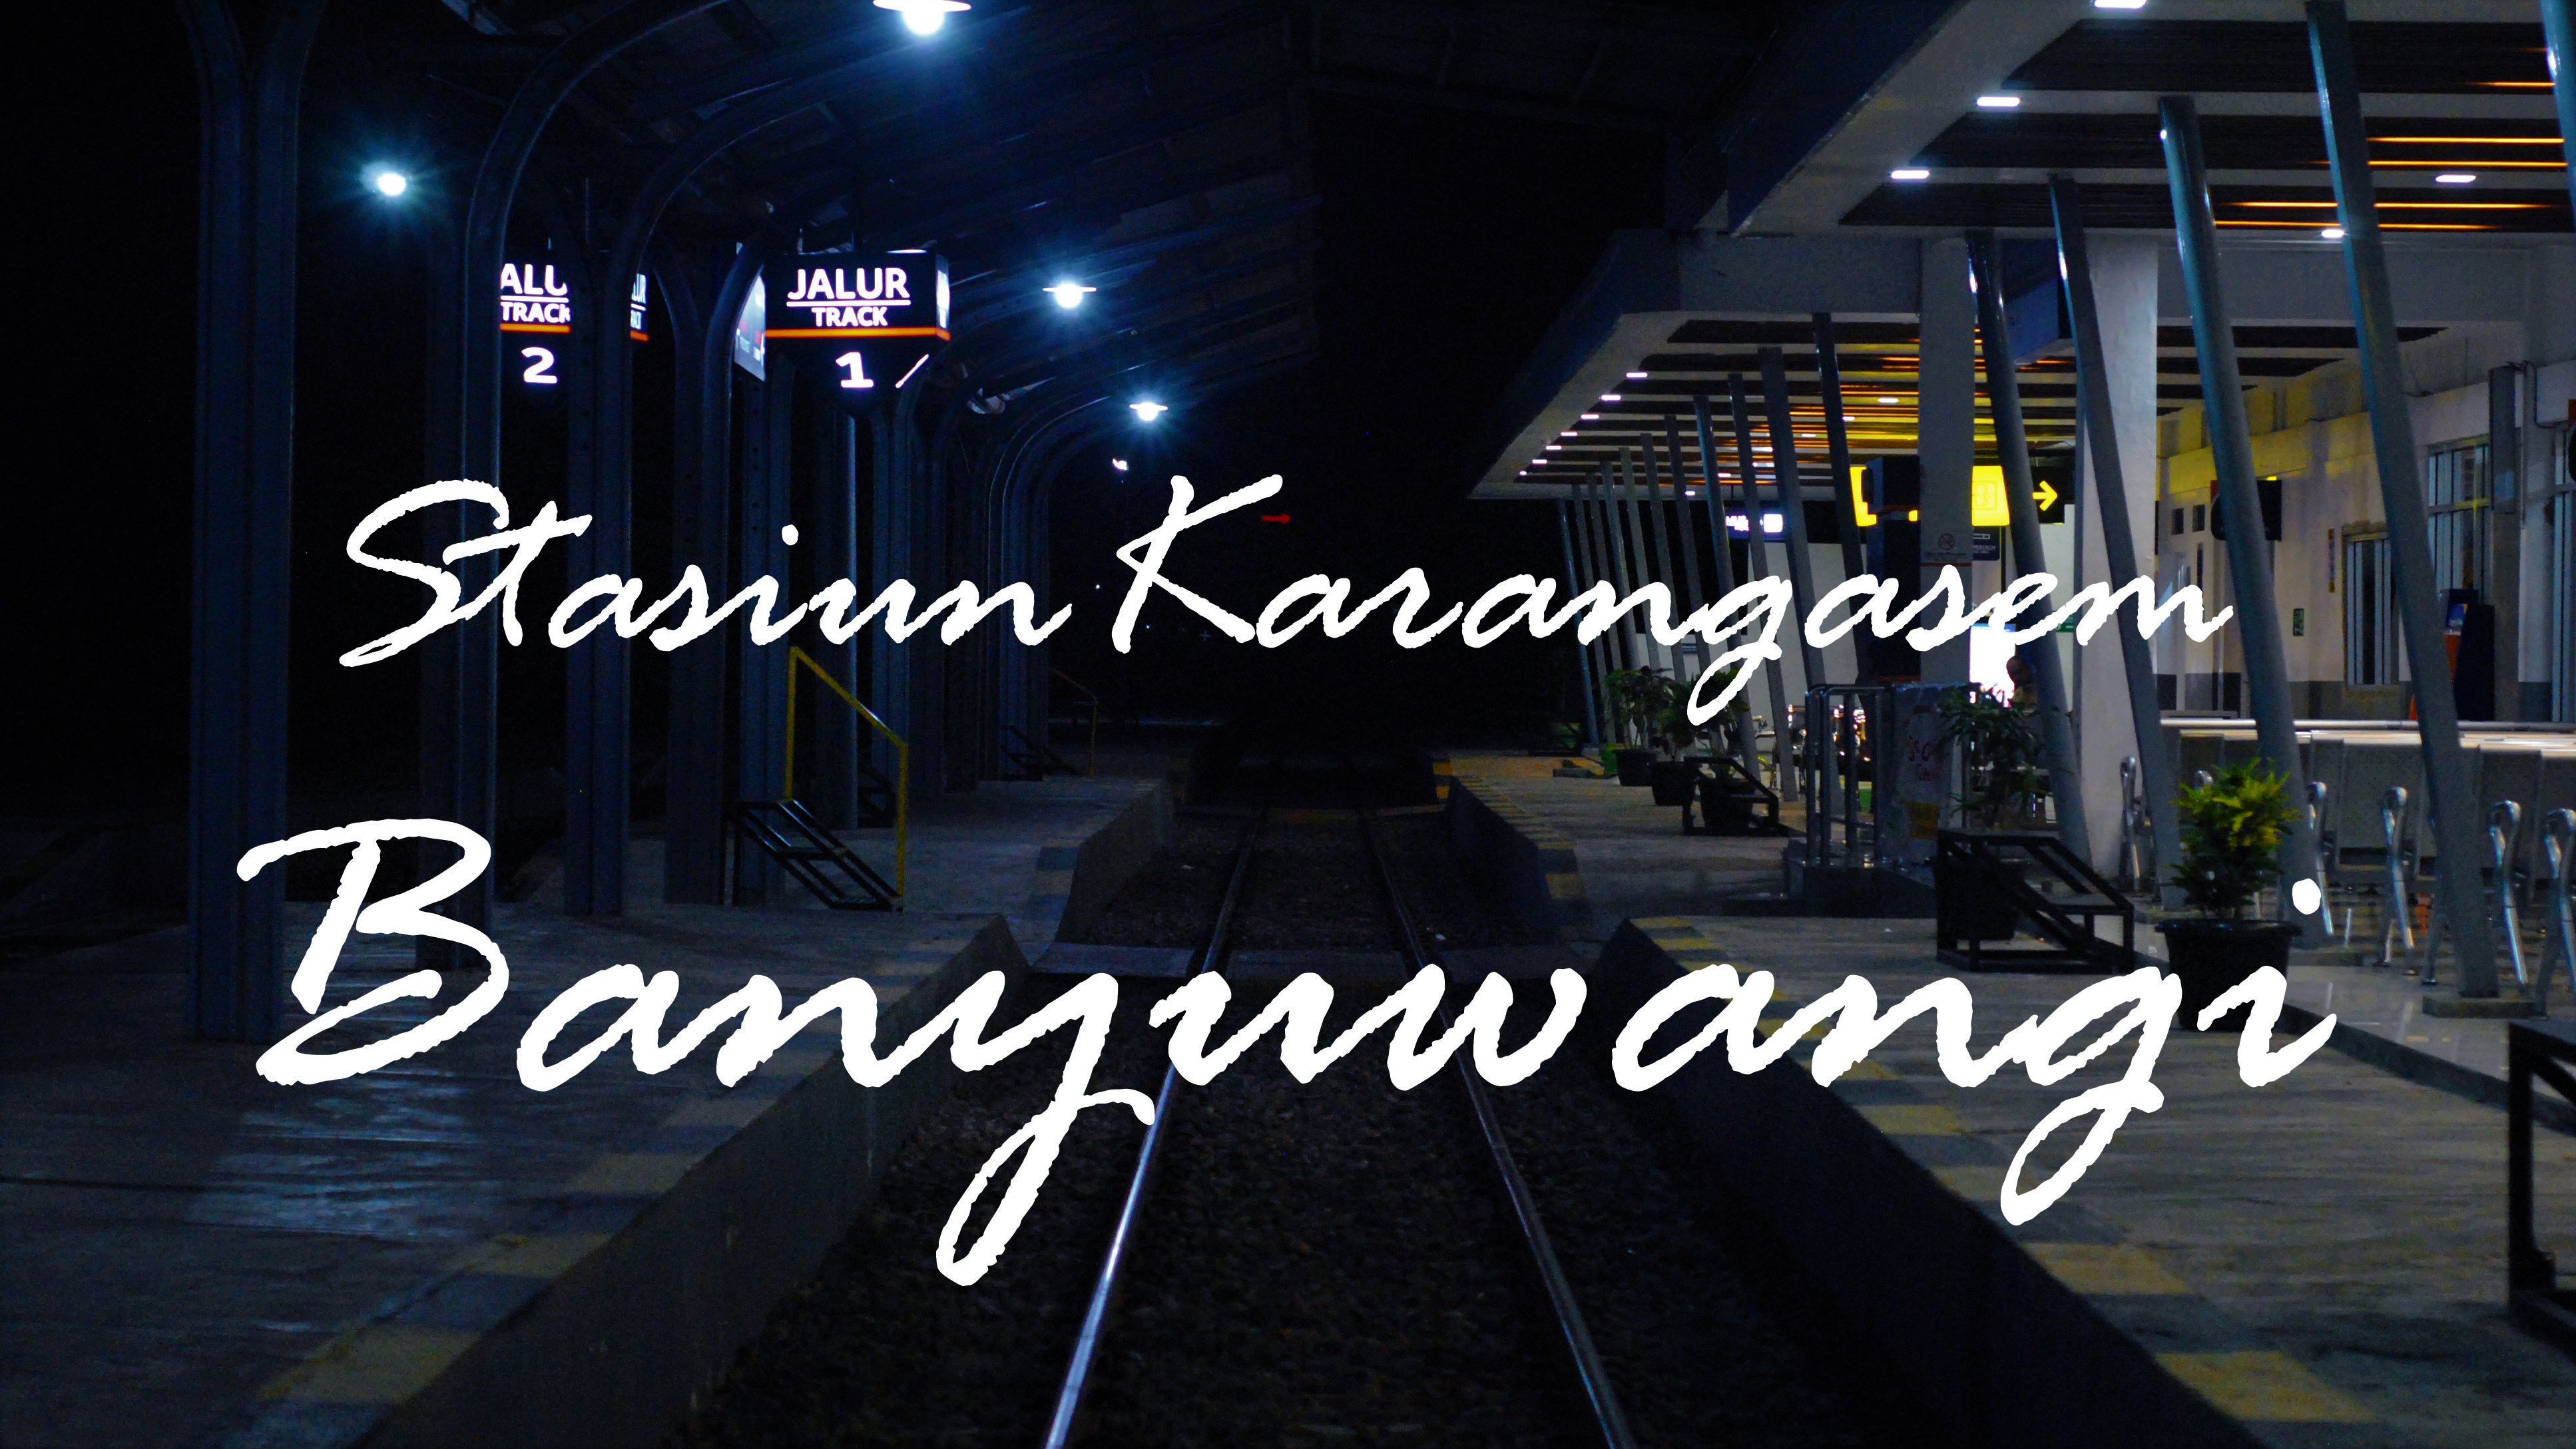 Stasiun Karangasem Banyuwangi menjelang Subuh, Rabu (12/6). Foto: dok. pribadi